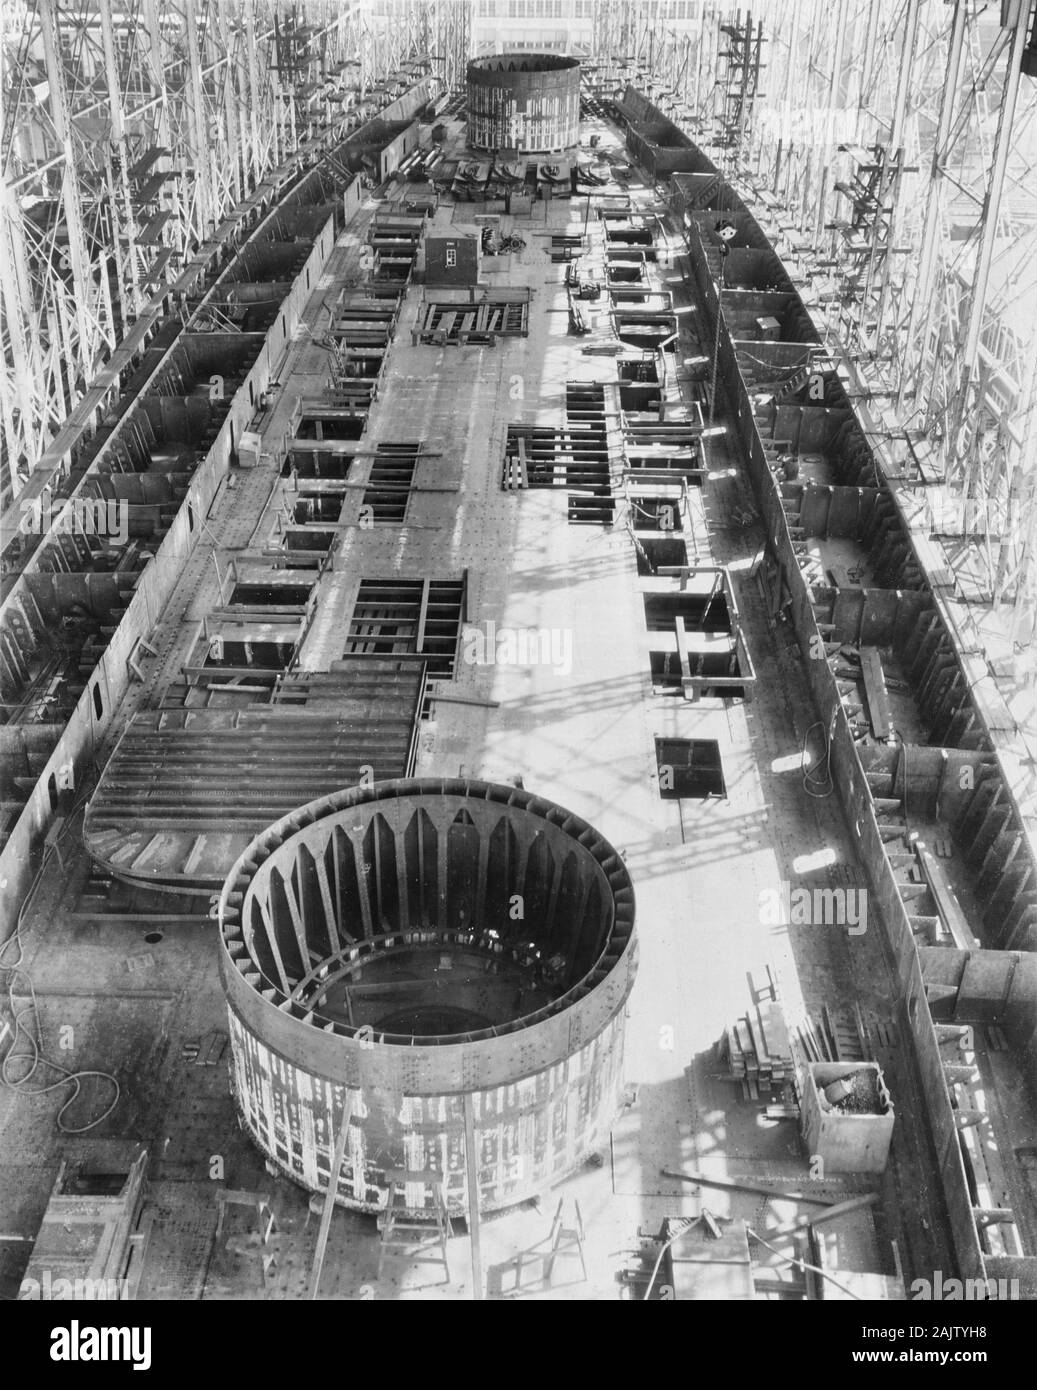 USS Saratoga. Coque incomplète, à l'avant, à la New York Shipbuilding Company Shipyard, Camden, New Jersey, 8 mars 1922. La construction avait été suspendue, en attendant sa conversion à un porte-avions. Remarque barbette reposant sur des structures de blocs sur son pont. Banque D'Images